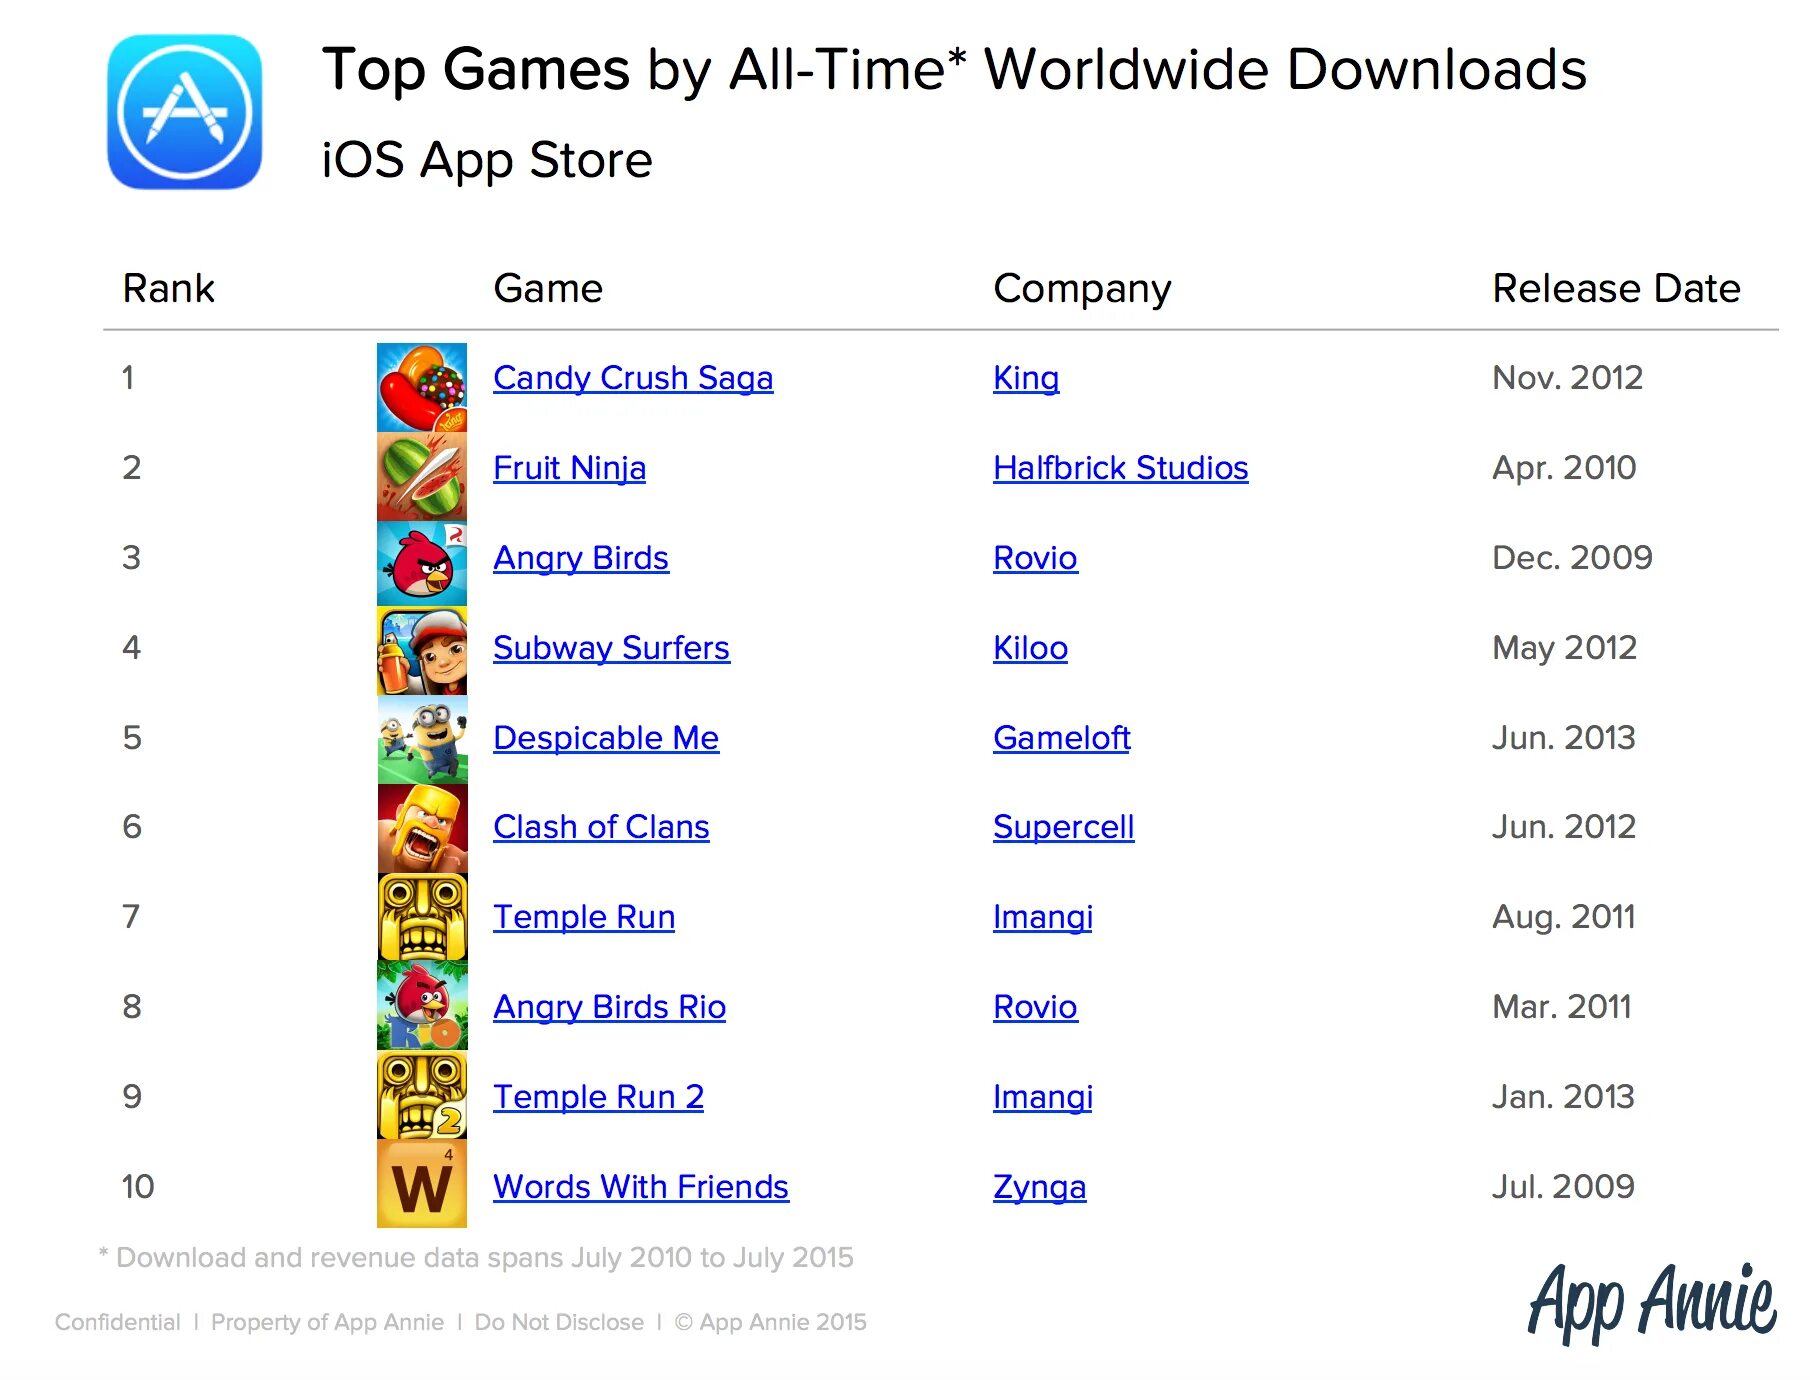 Какой рейтинг у игры. Список самых популярных игр. Популярные игры список. Список самых популярных мобильных игр. Какая игра на 1 месте.